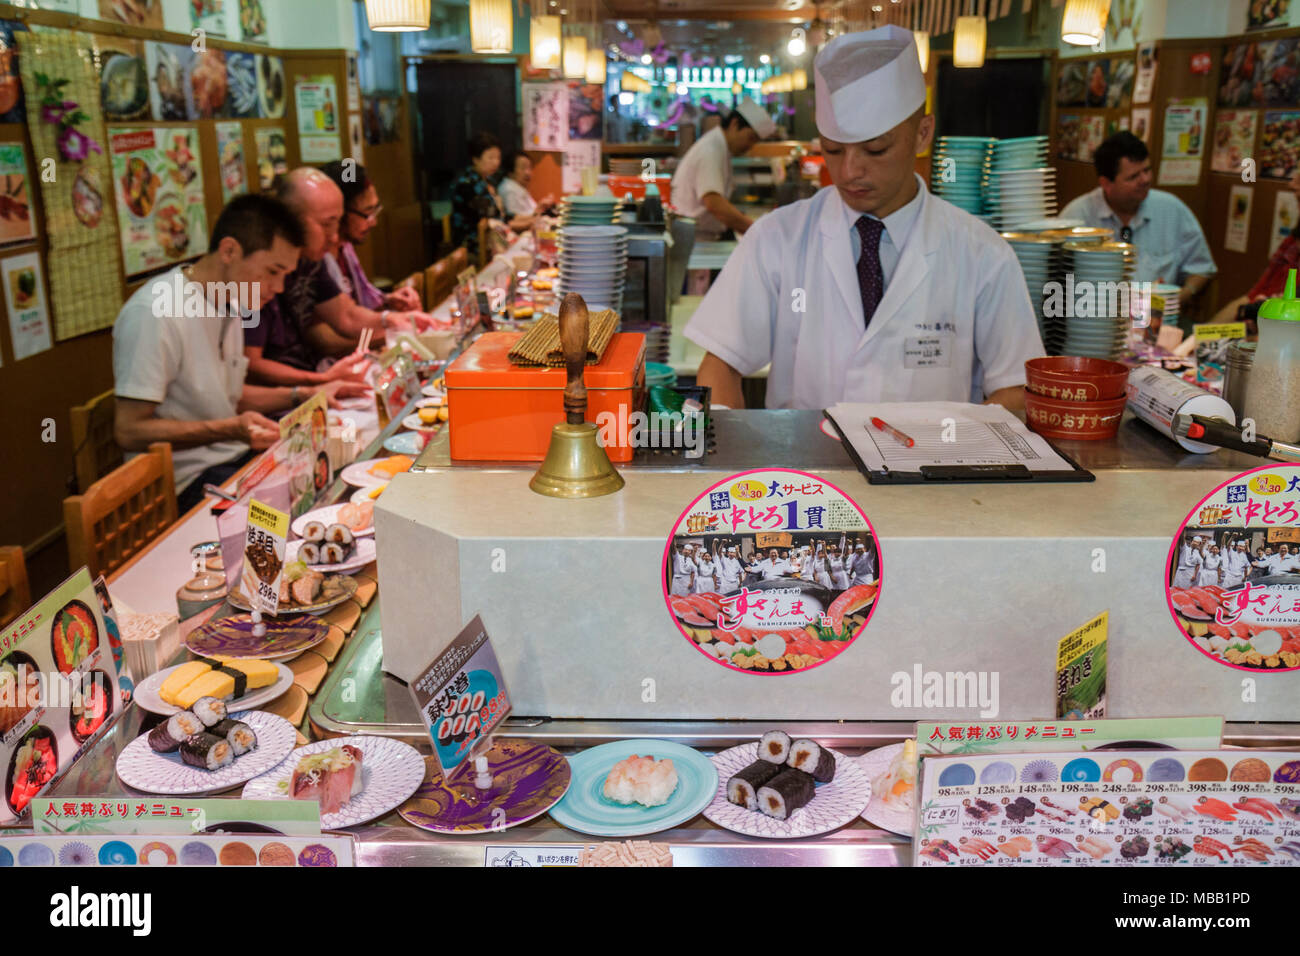 Tokyo Japan,Tsukiji Fish Market,kanji,hiragana,characters,symbols,sushi bar,restaurant restaurants food dining cafe cafes,moving,dishes,prices,custome Stock Photo